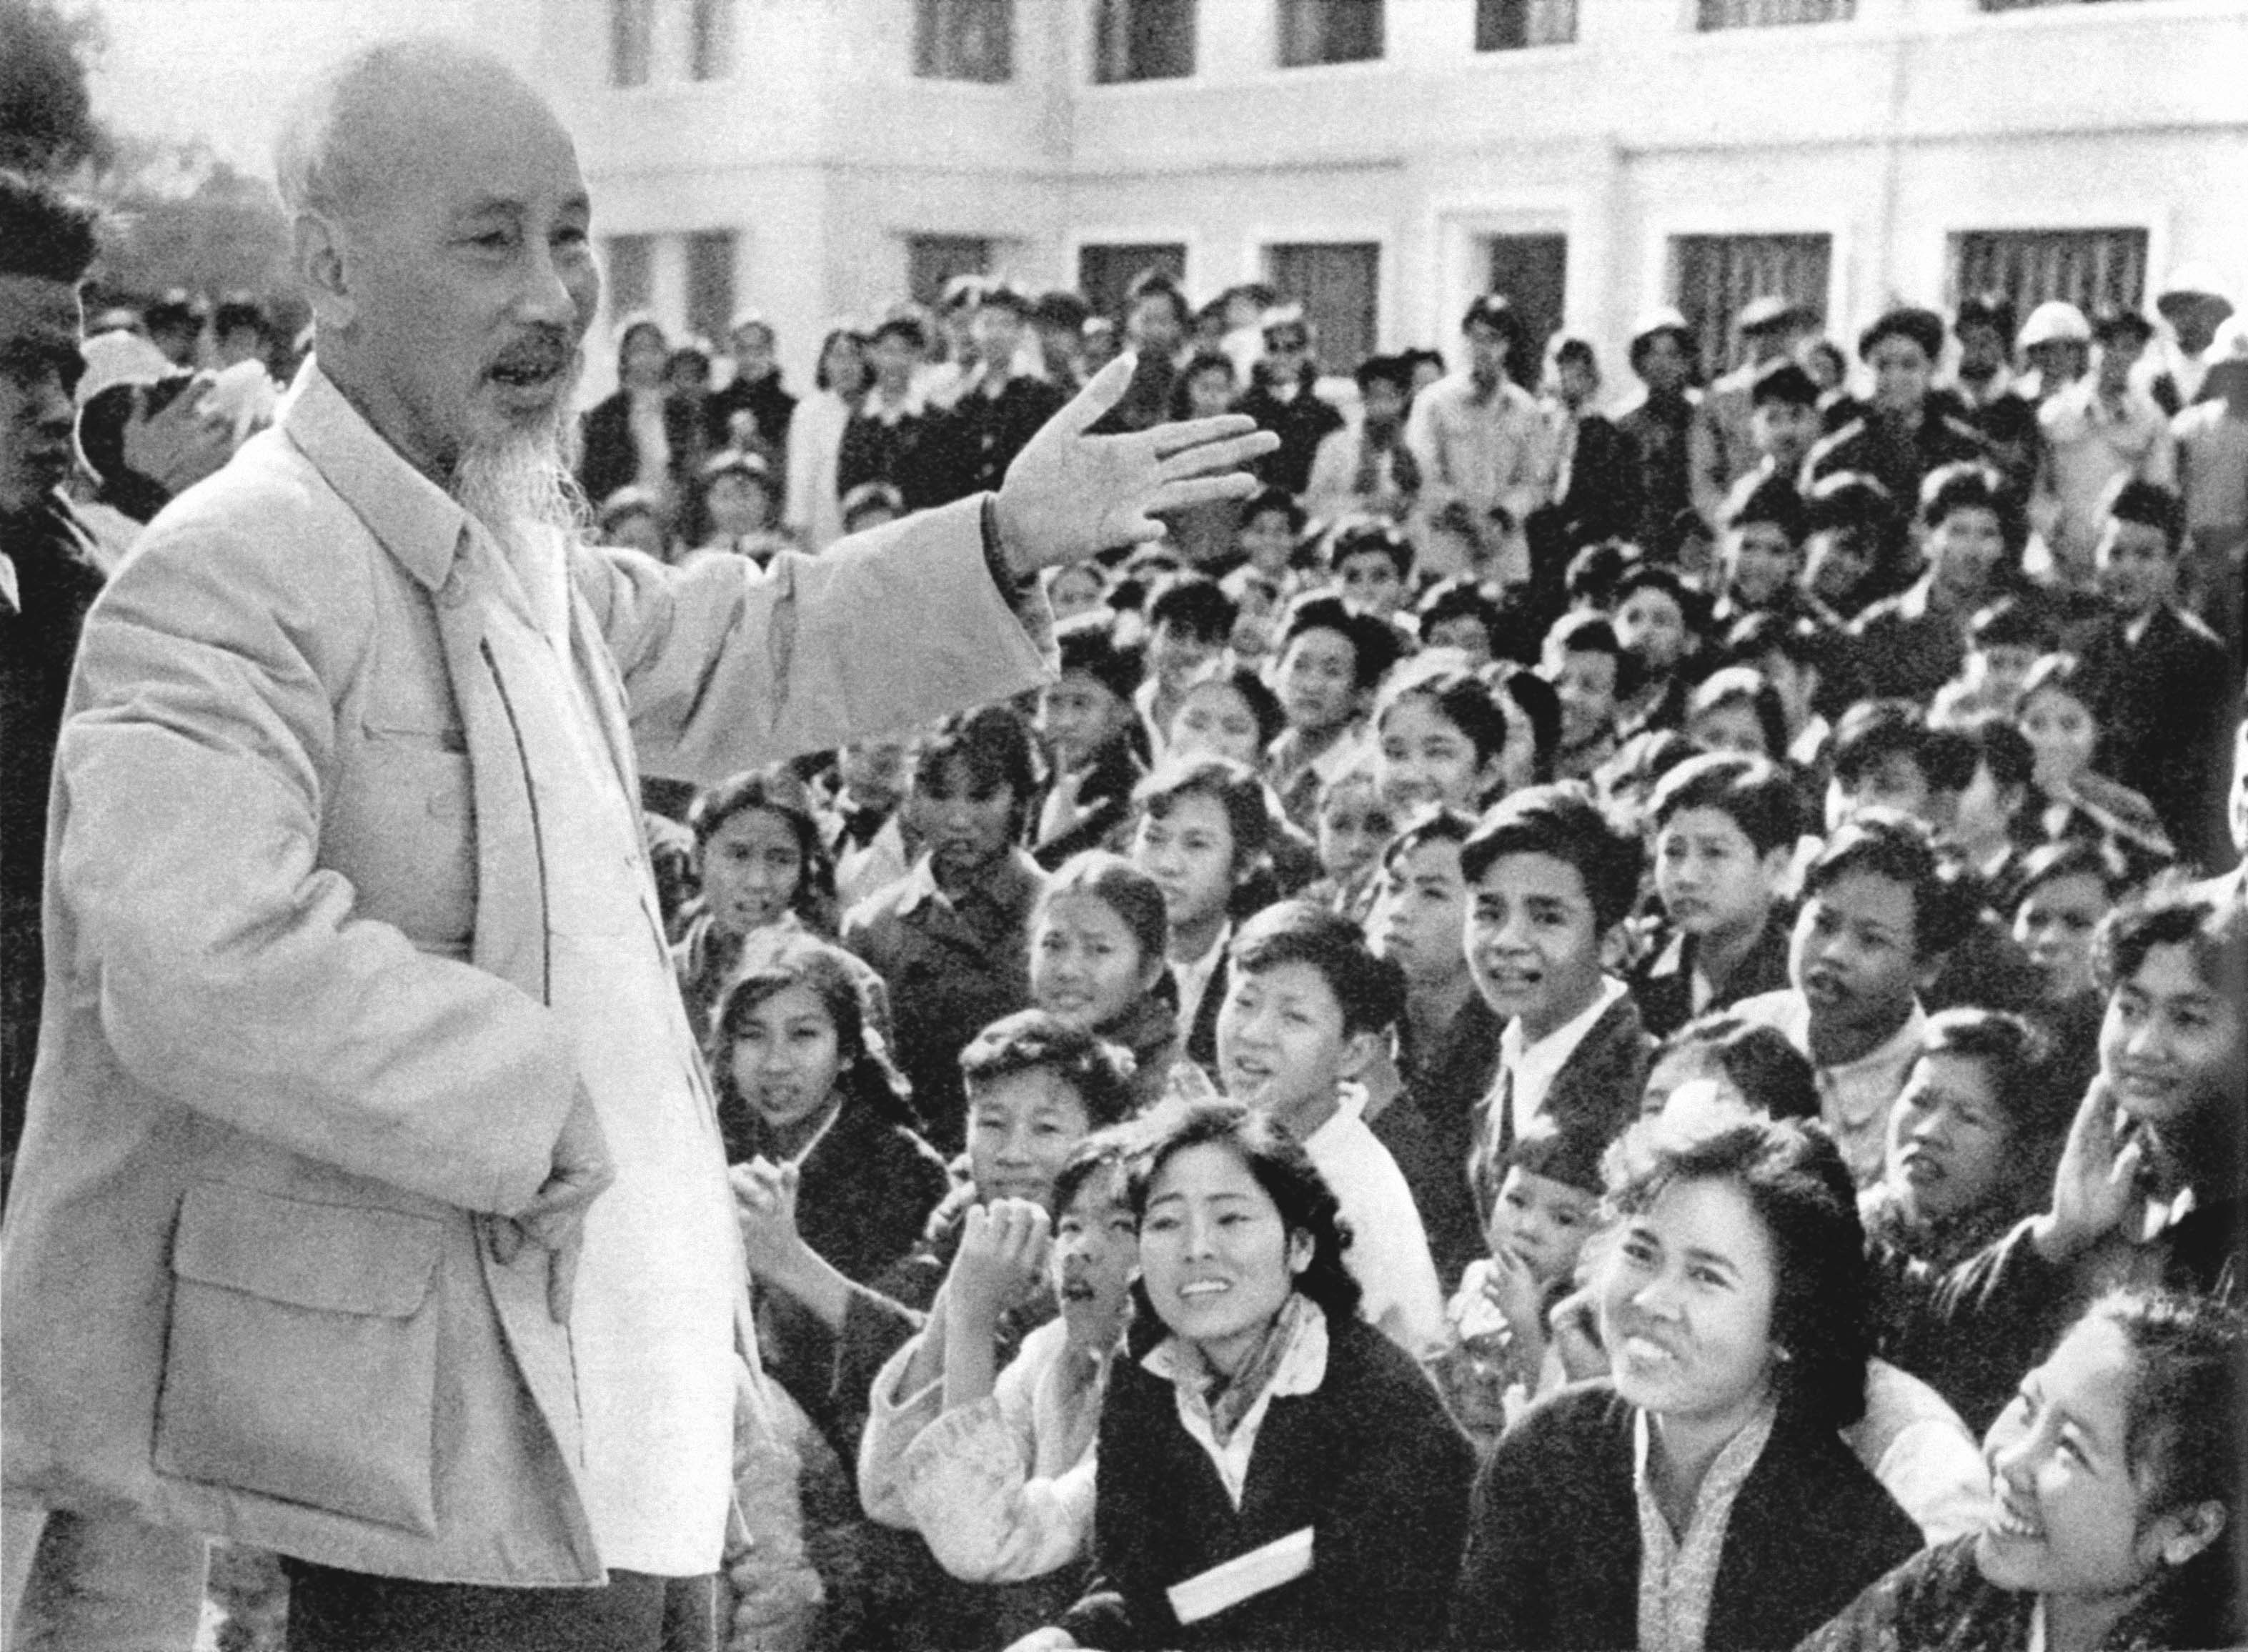 Diễn vǎn chúc mừng nǎm mới trong dịp lễ mừng Trung ương Đảng và Chính phủ về Thủ đô do Chủ tịch Hồ Chí Minh đọc tại quảng trường Ba Đình, Hà Nội trong ngày lịch sử 1/1/1955.